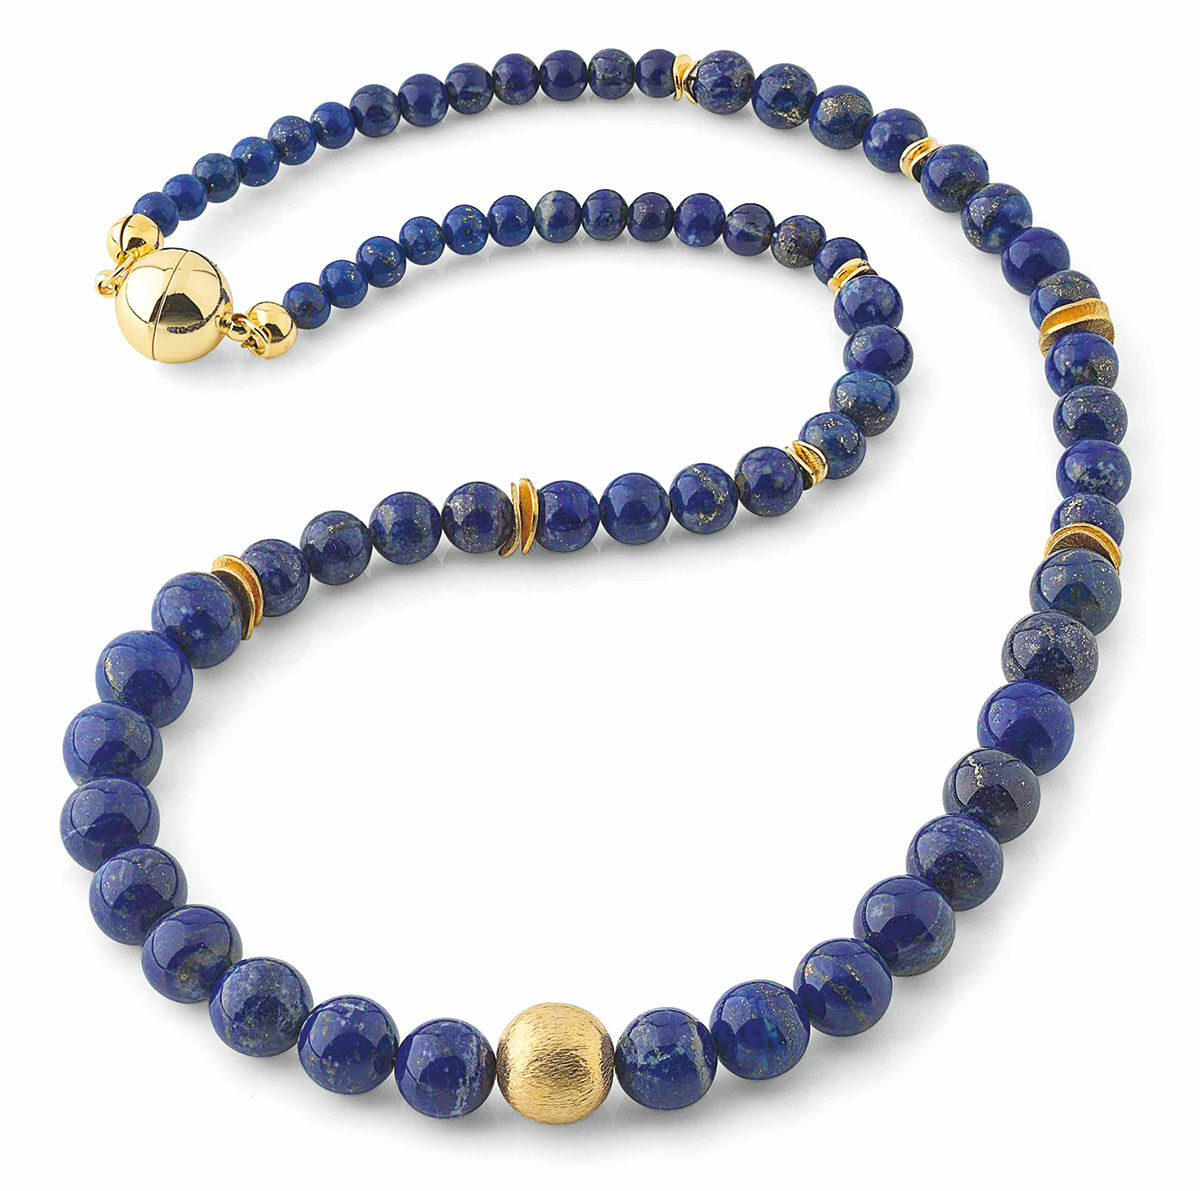 Pearl necklace "Blue Dreams"